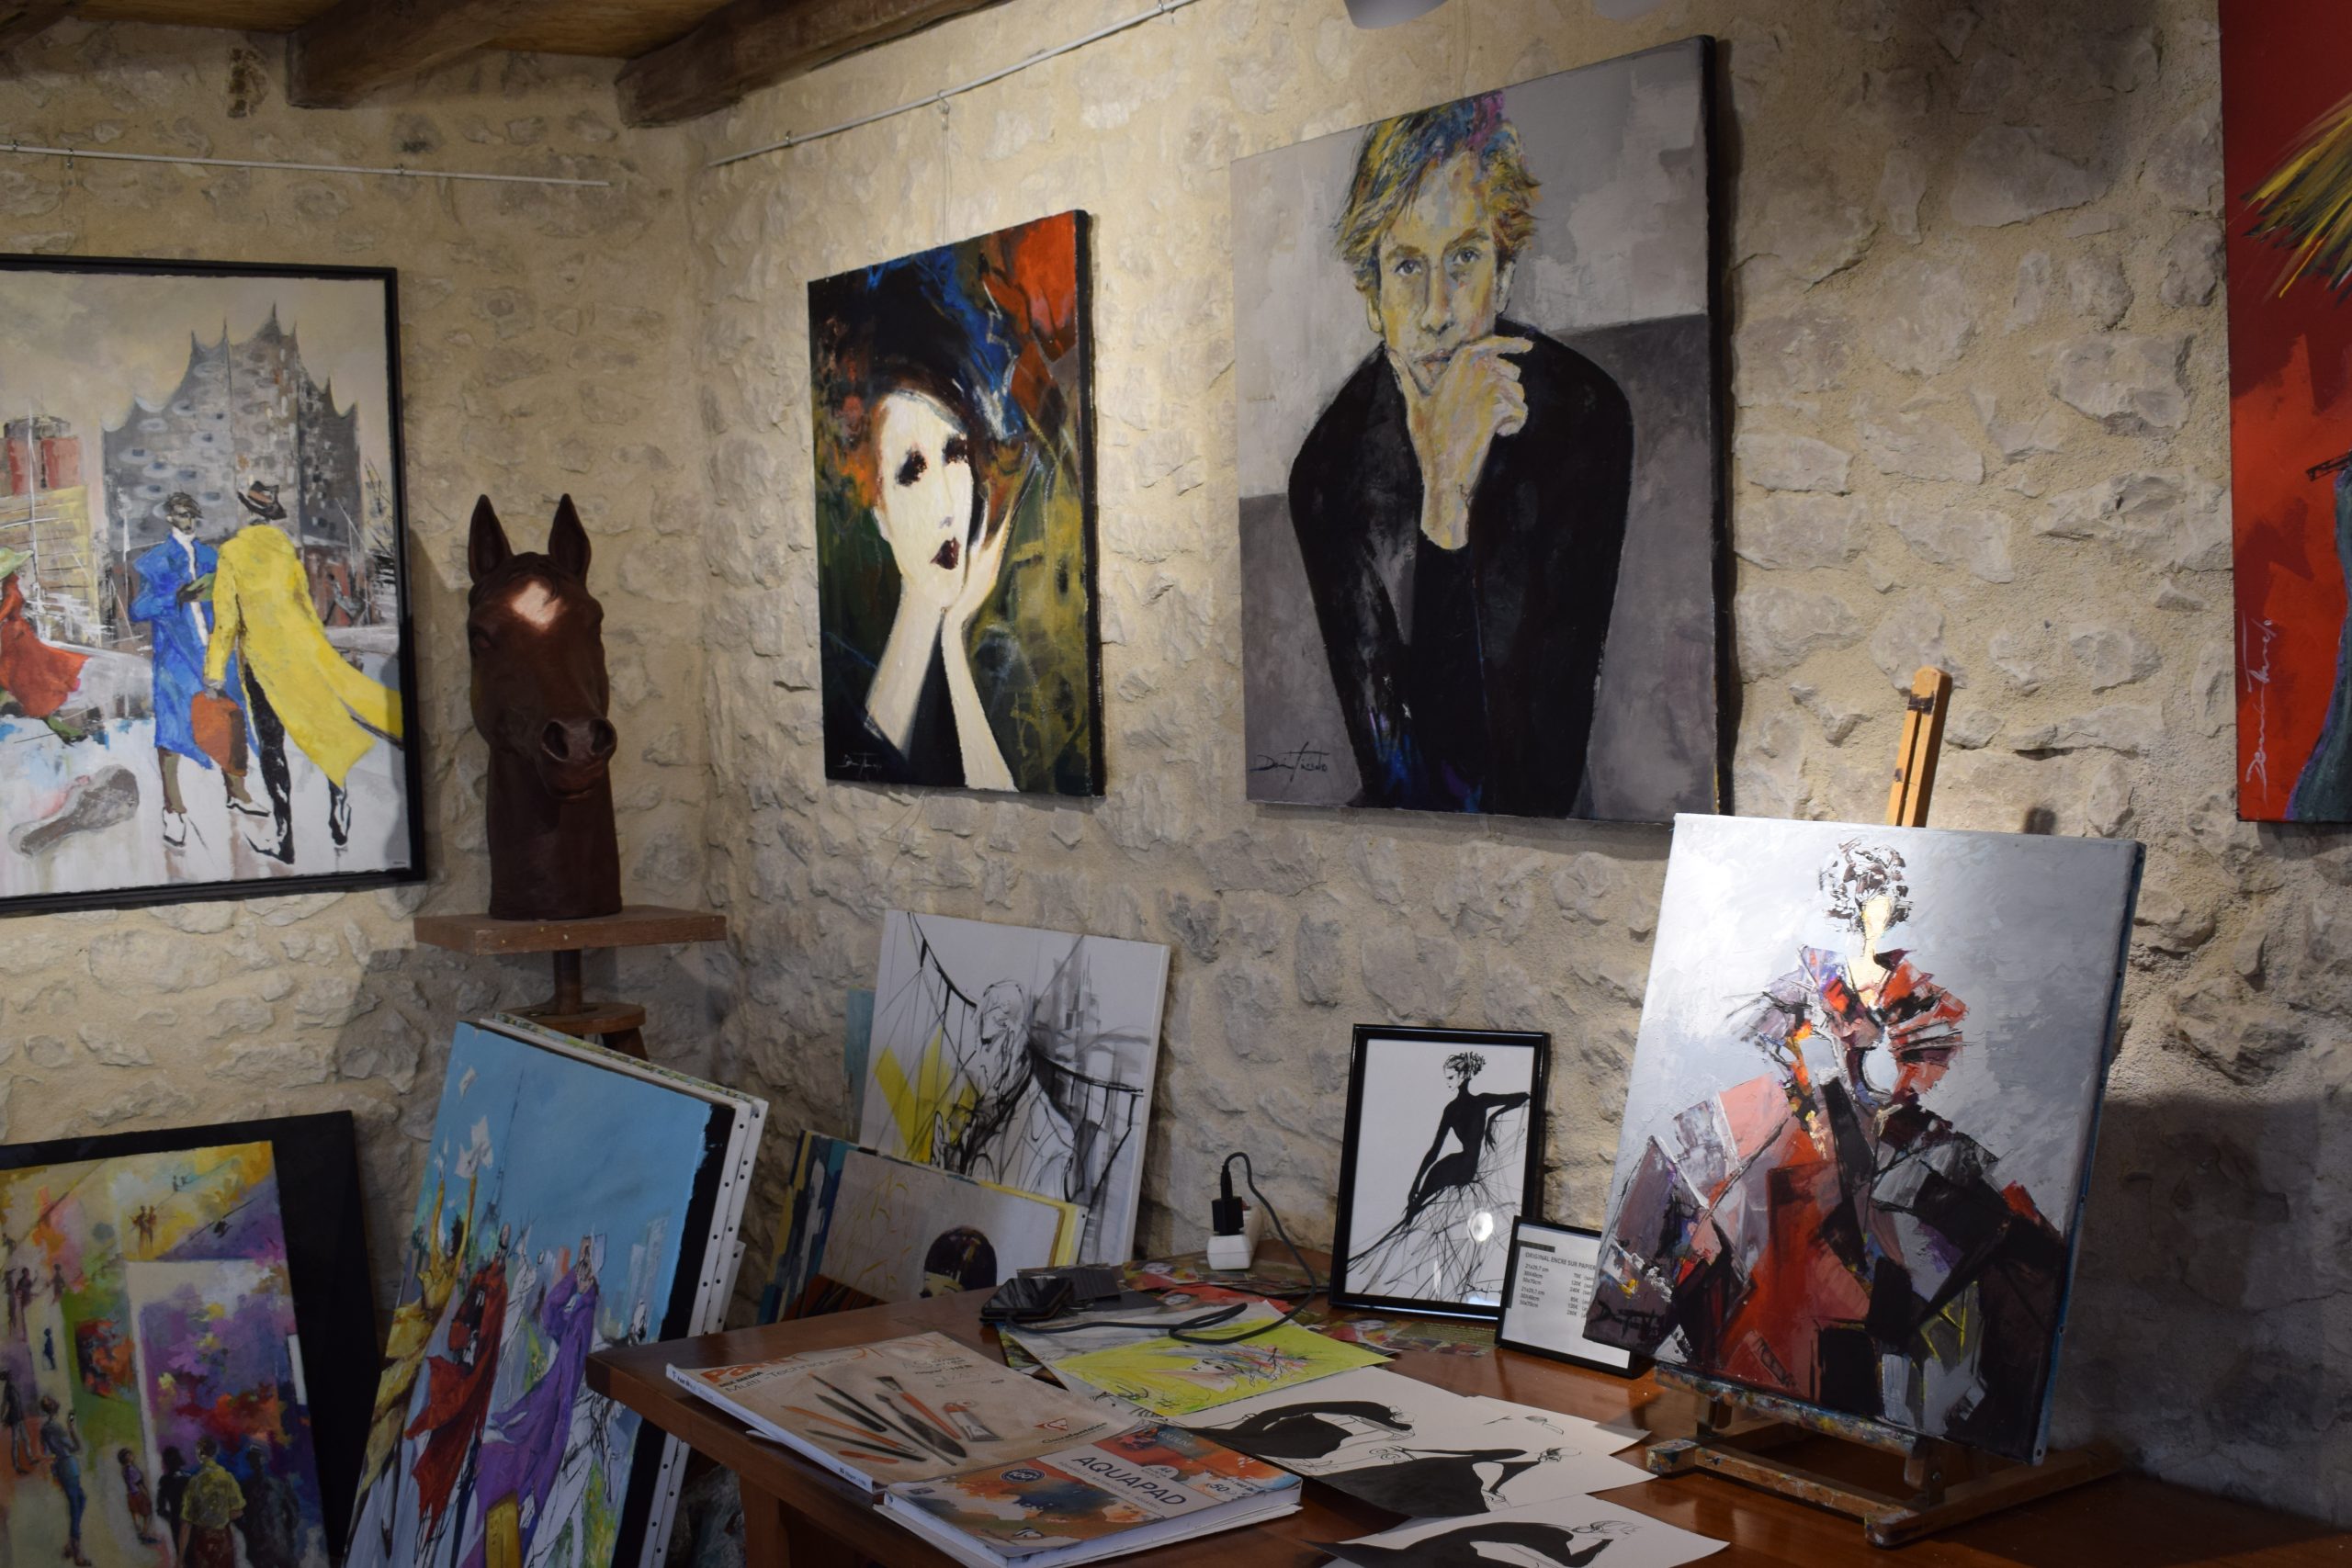 De nombreuses œuvres sont exposées au sein de l'atelier de l'artiste. L'exposition se visite librement et gratuitement. L'occasion de se rendre compte de l'éclectisme de Damian Tirado dans ses peintures et ses sculptures.